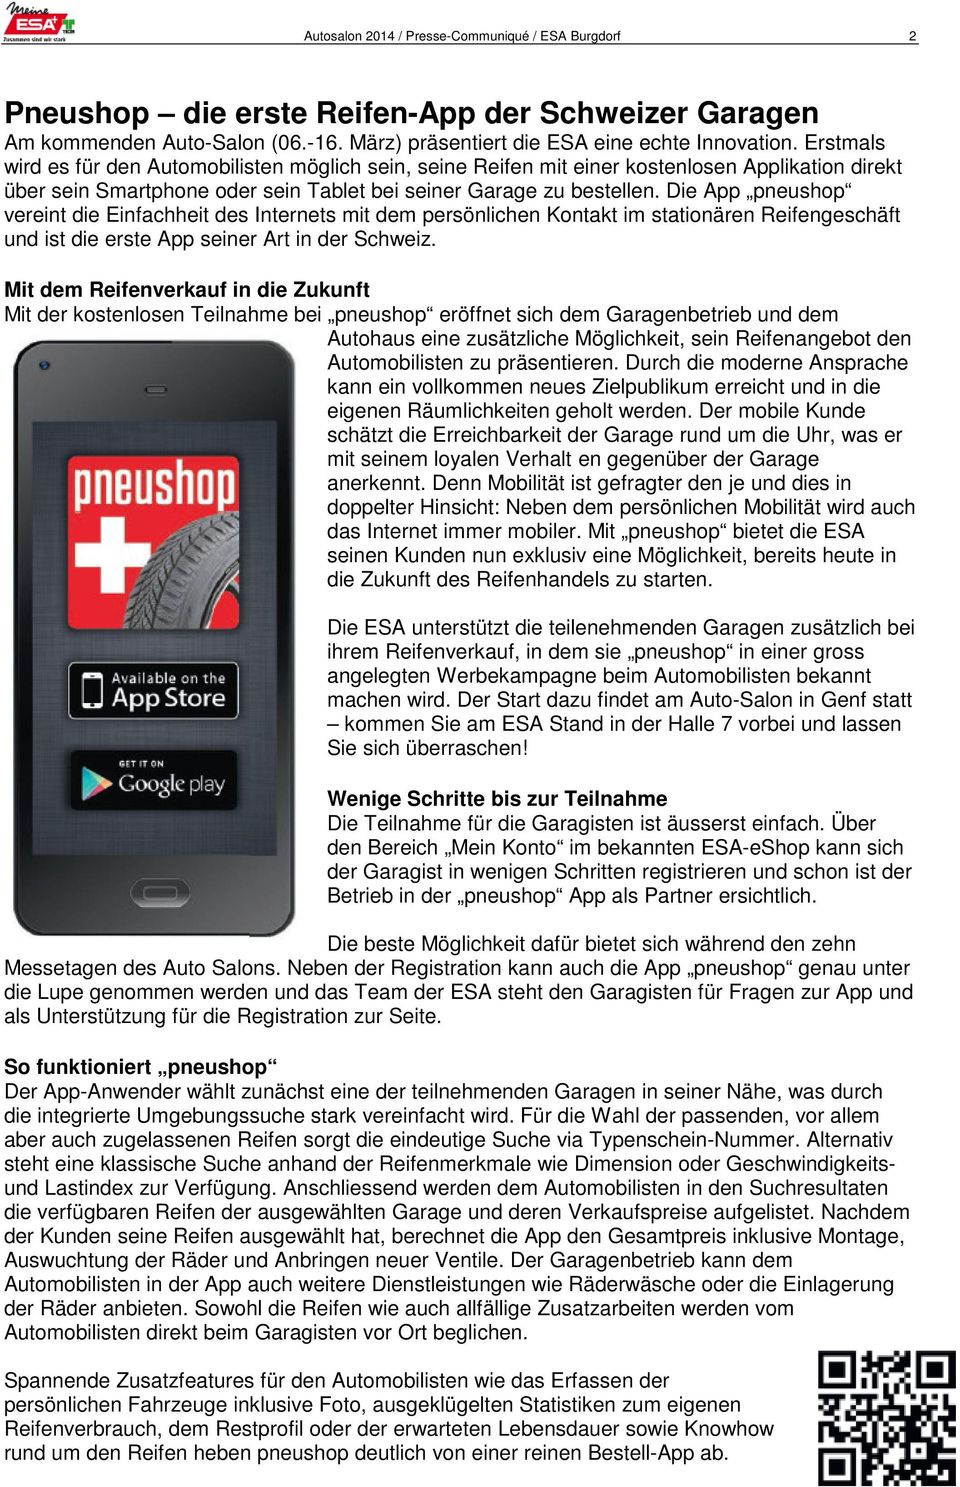 Die App pneushop vereint die Einfachheit des Internets mit dem persönlichen Kontakt im stationären Reifengeschäft und ist die erste App seiner Art in der Schweiz.